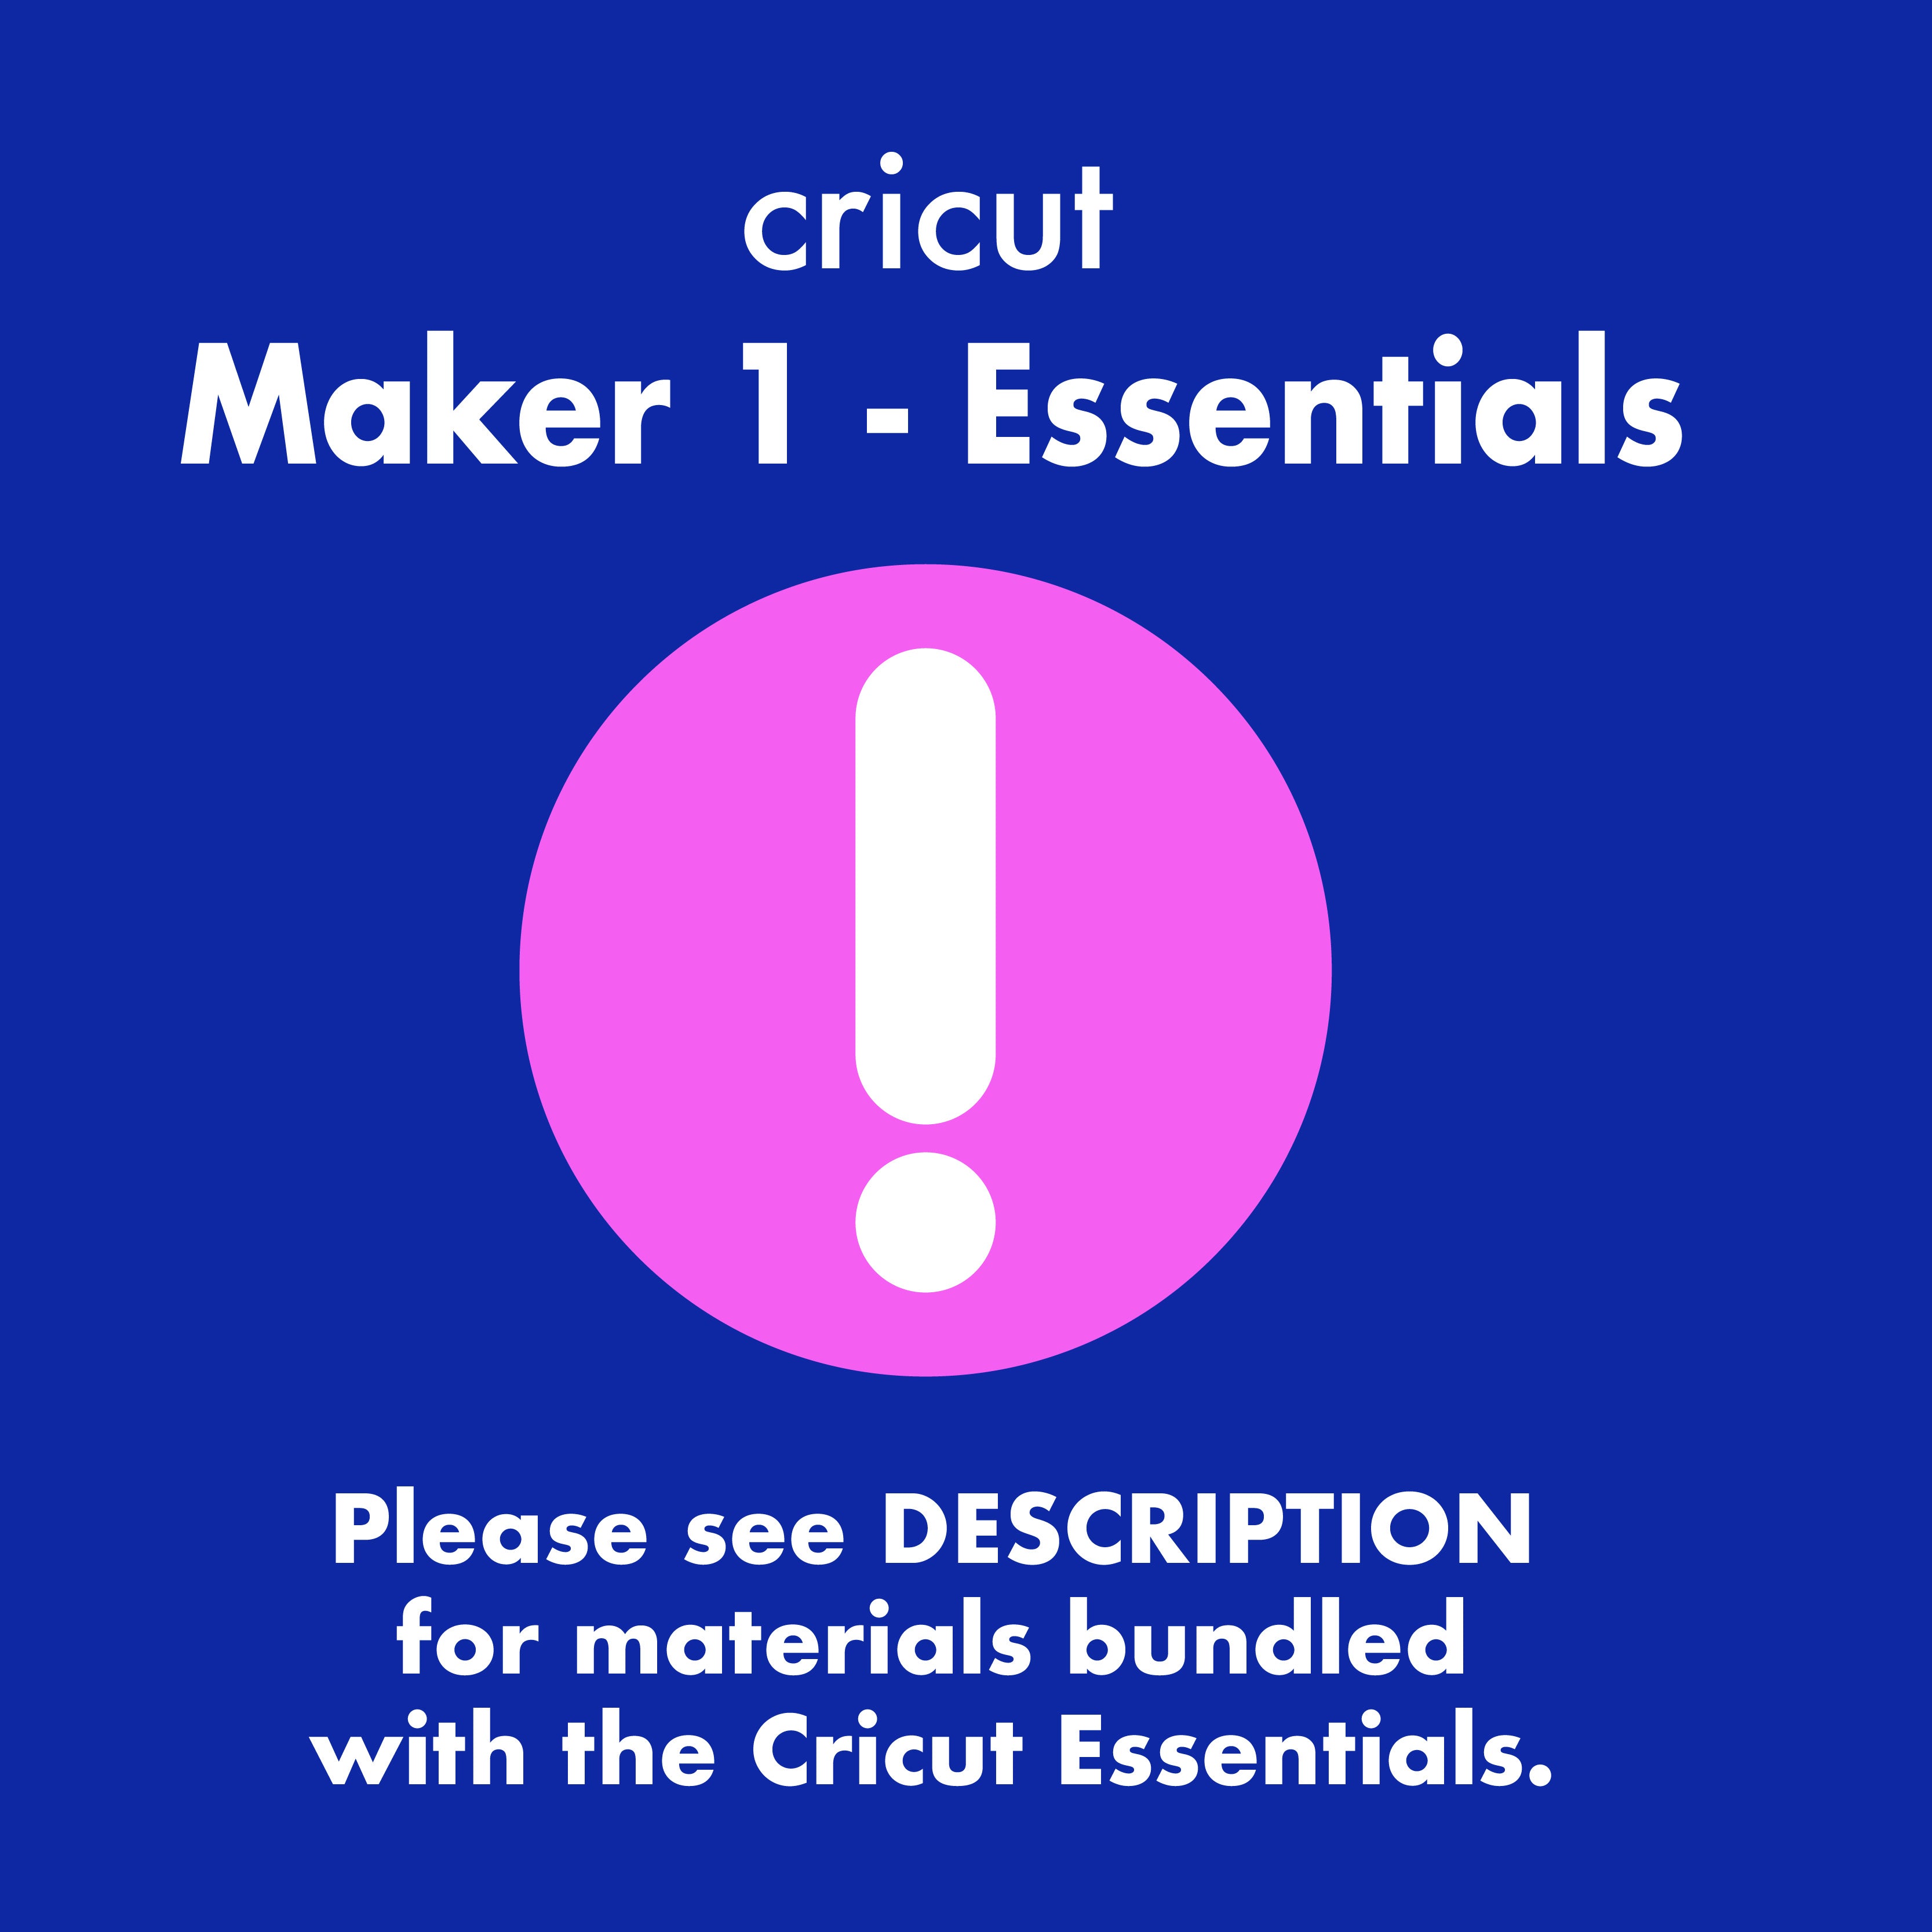 Cricut Maker 1 + Essentials Bundle